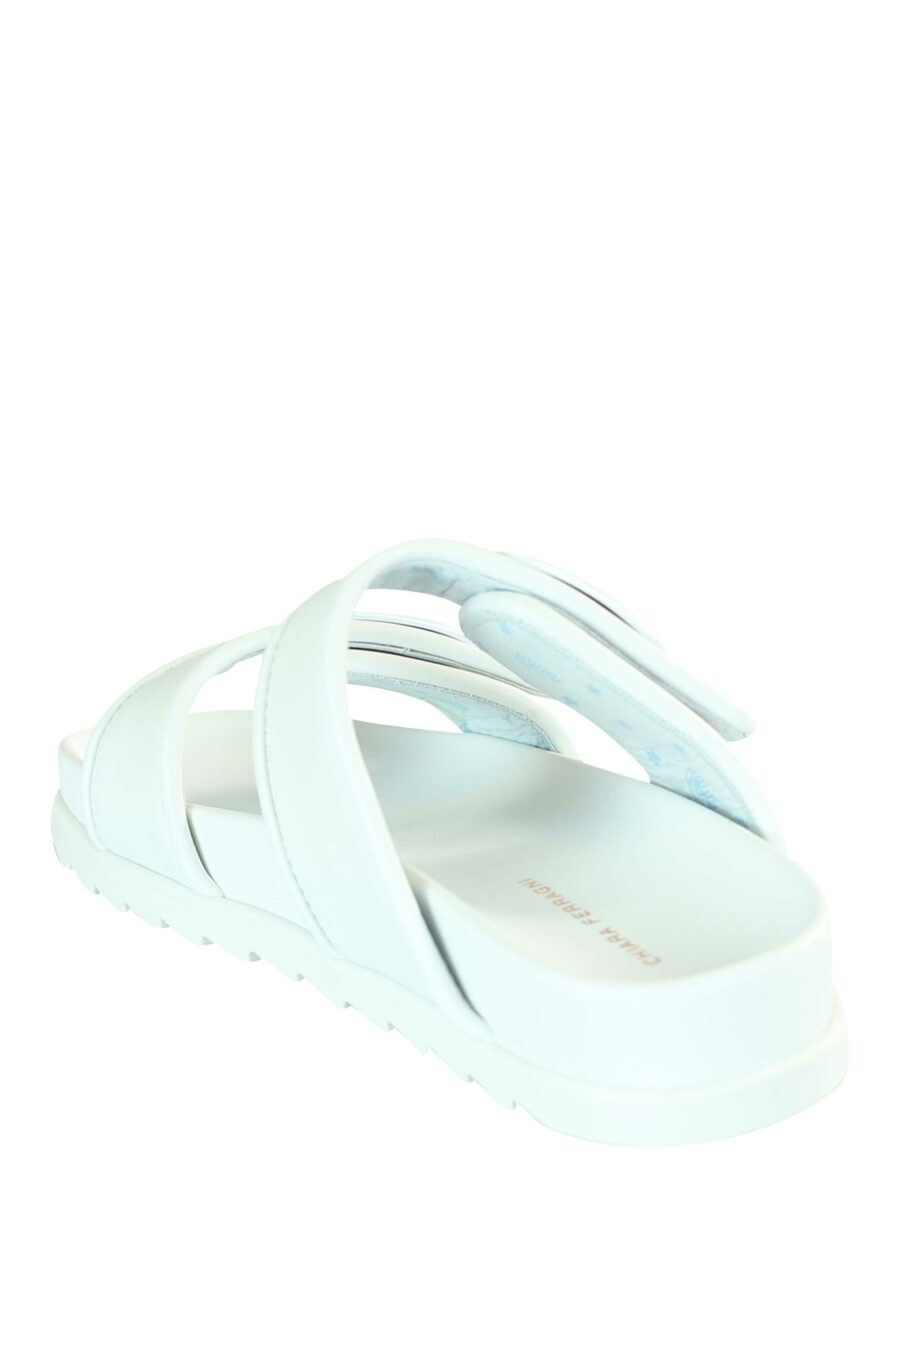 Sandálias brancas com logótipo monocromático em metal - 8054145748138 4